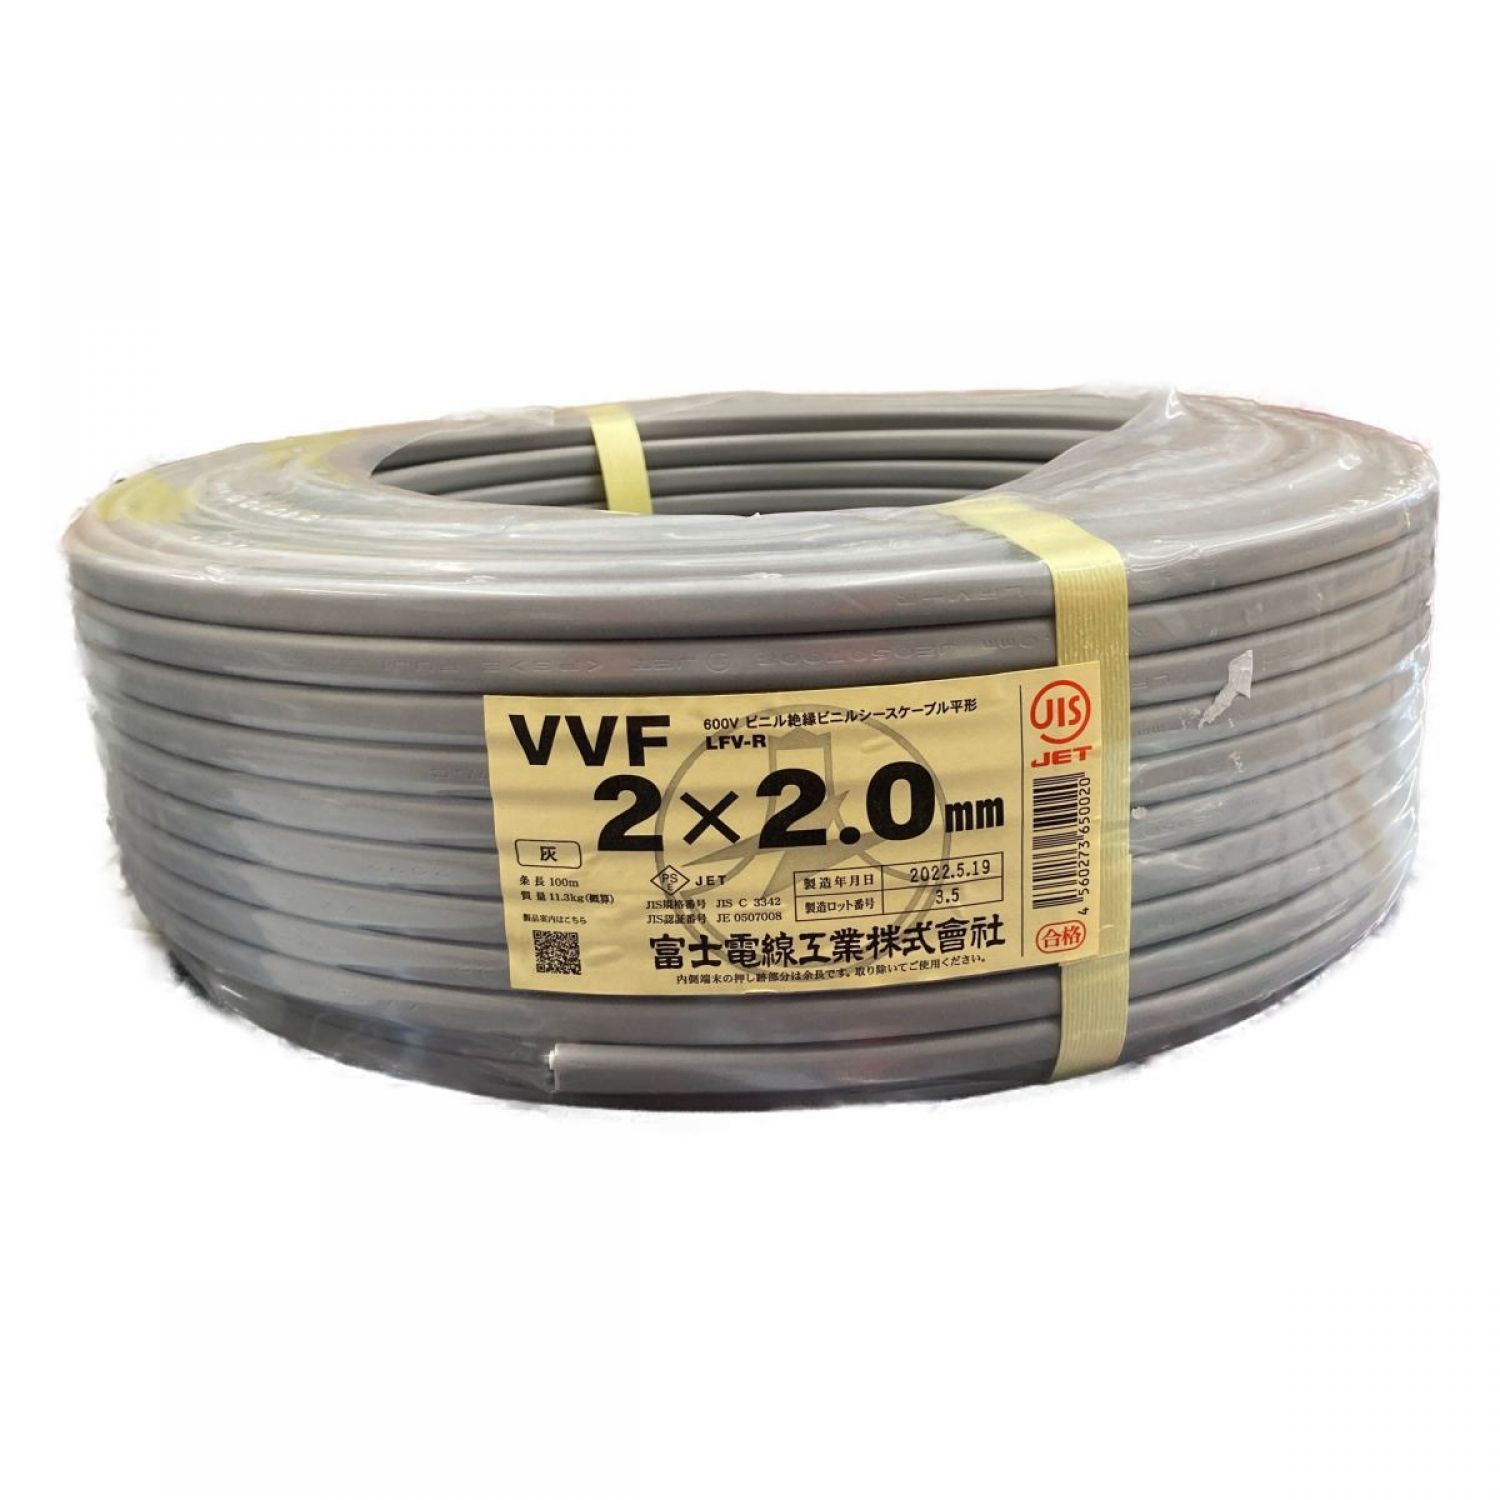 VVF ケーブル 2×2.0mm 富士電線工業 引き取り ケーブル-